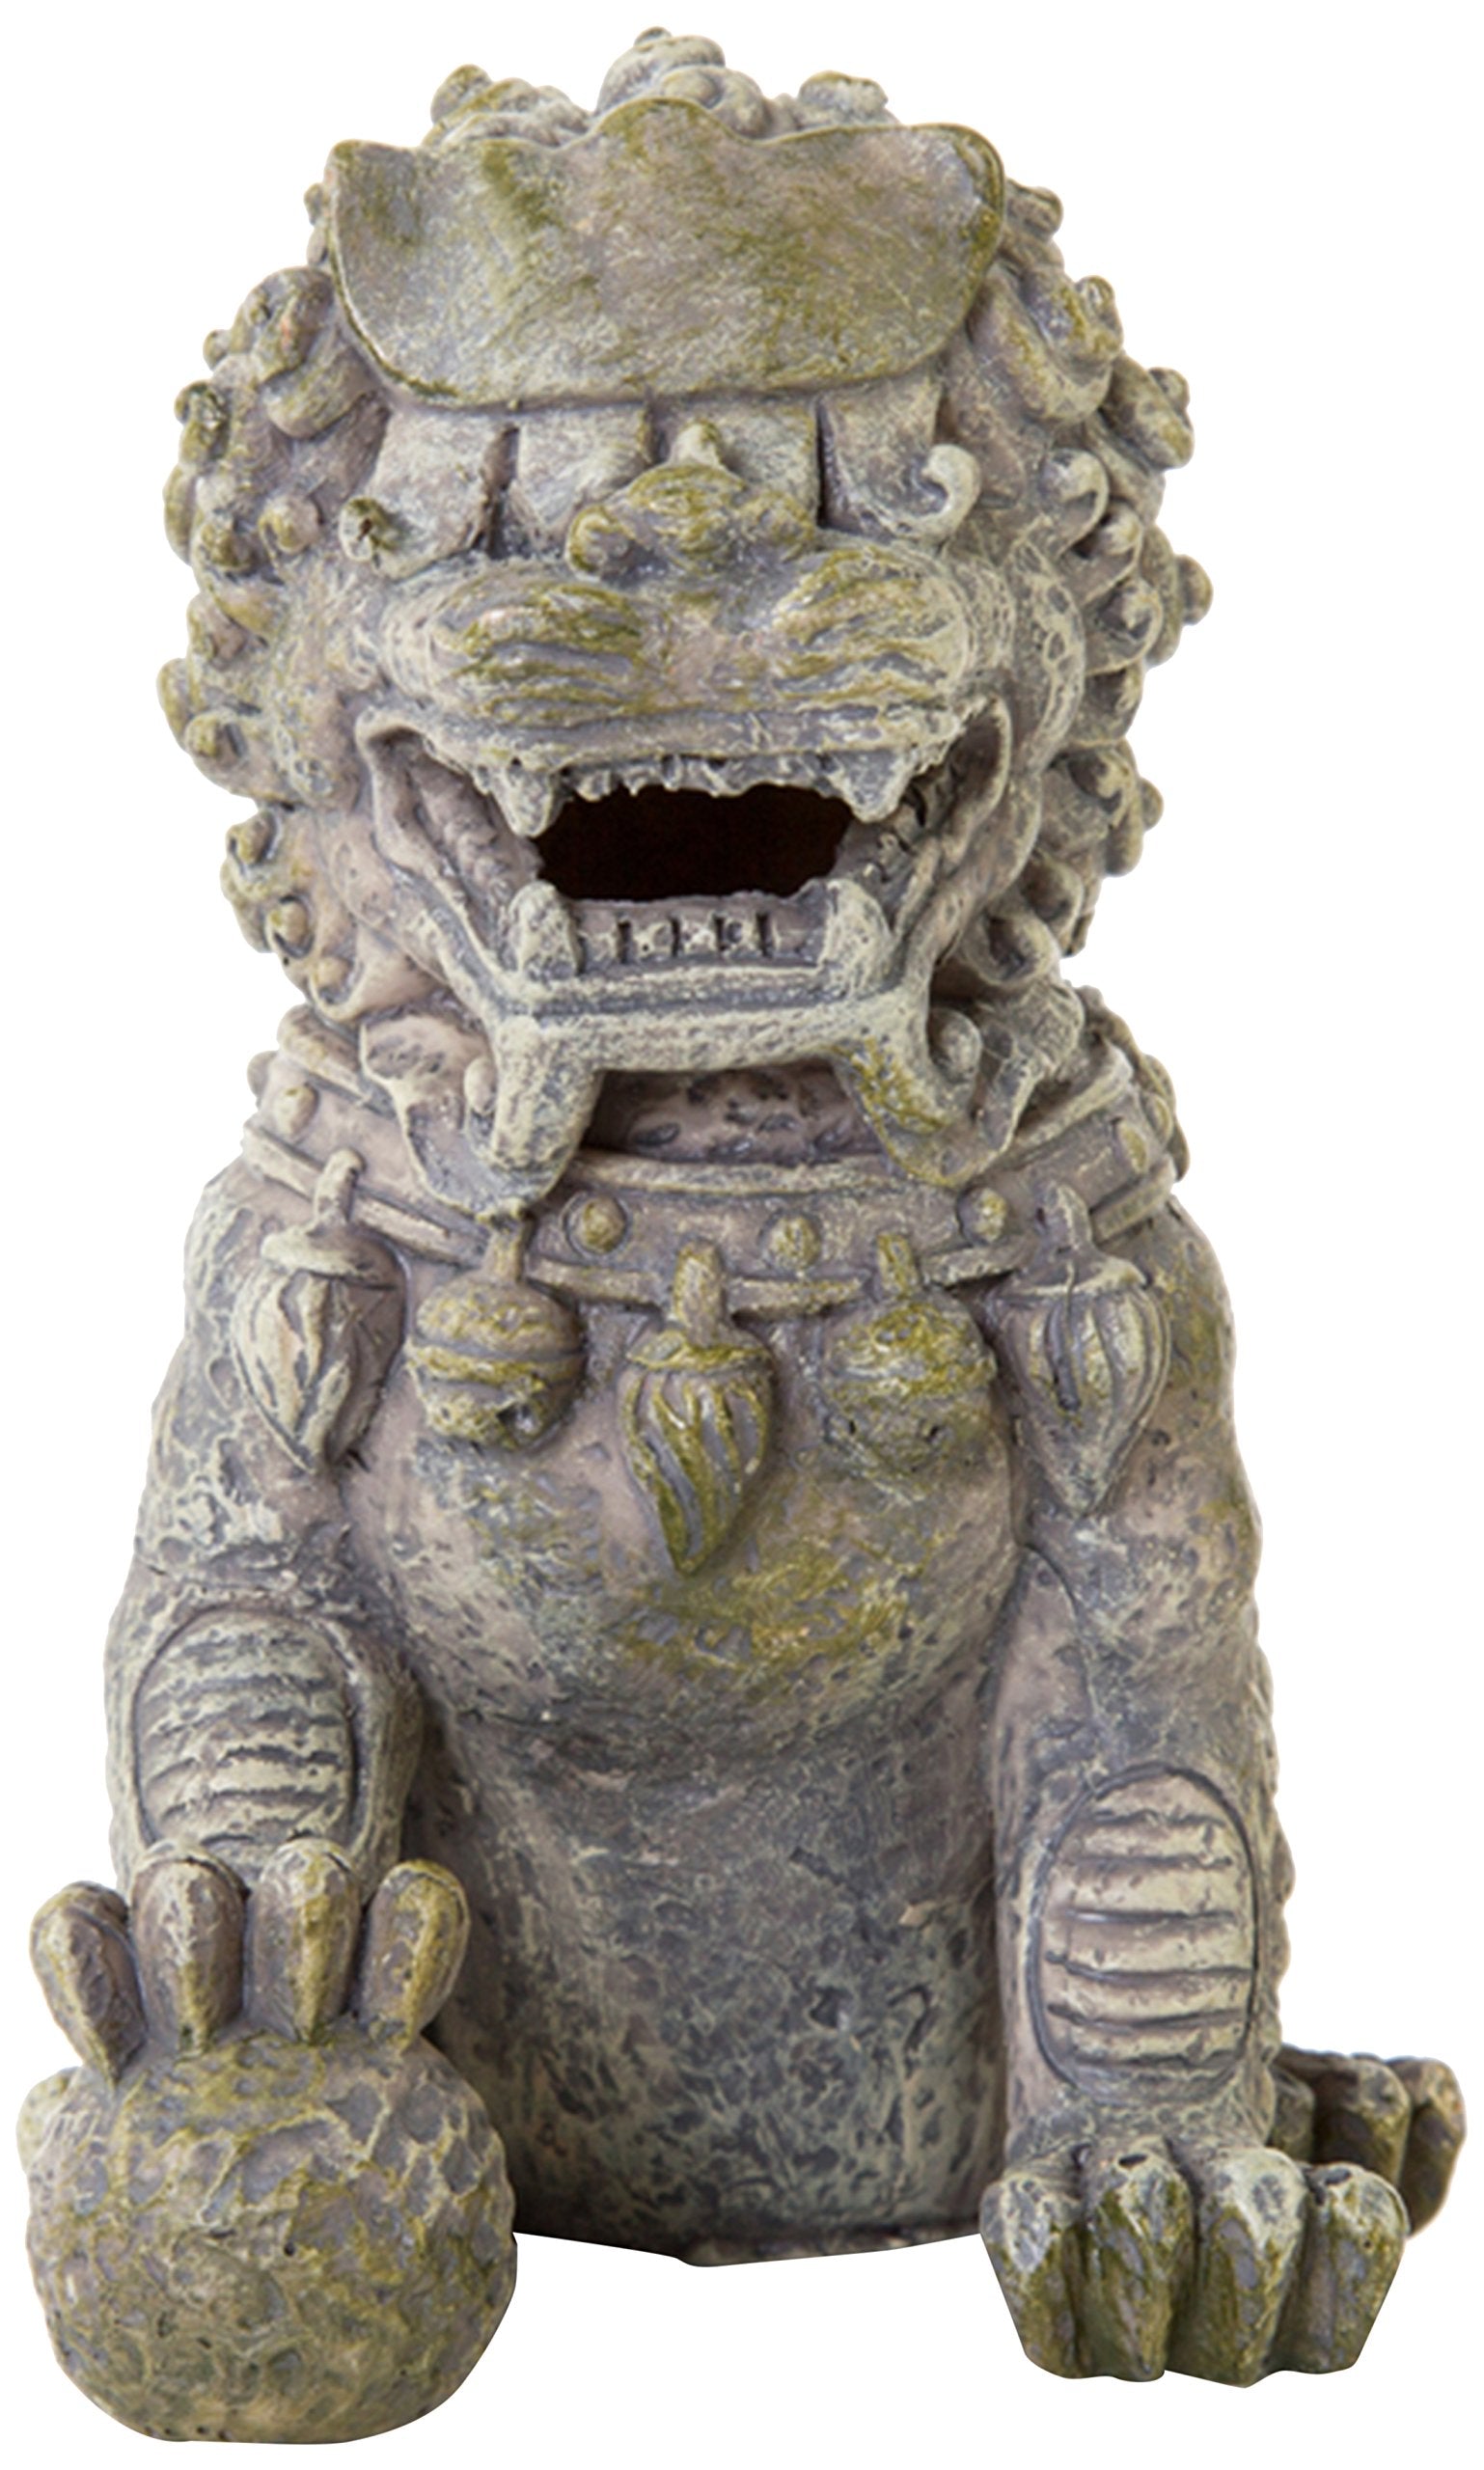 Temple Guardian Figurine